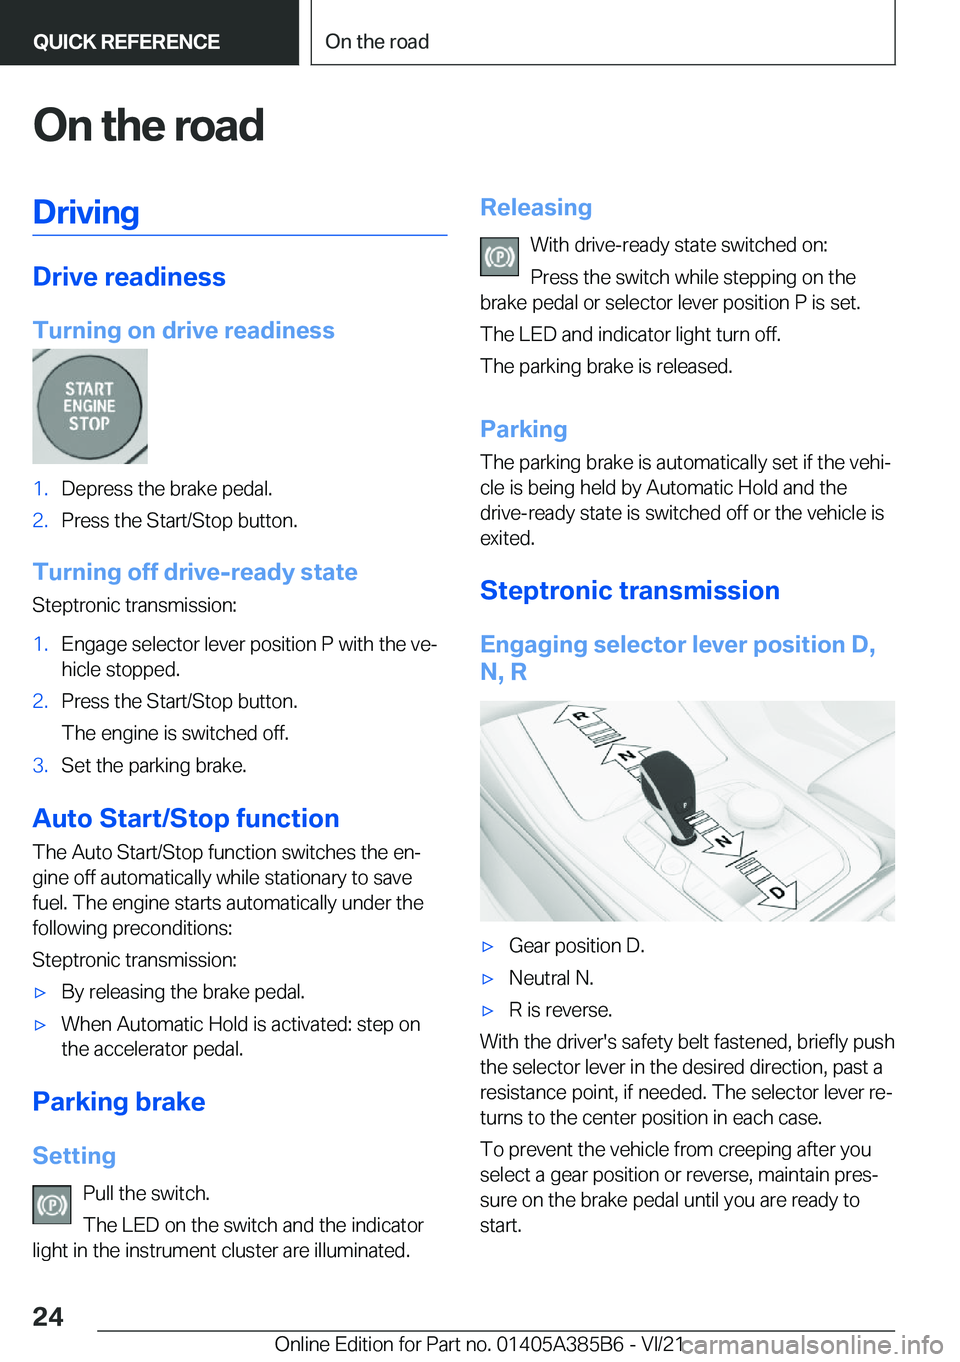 BMW X7 2022 Owners Manual �O�n��t�h�e��r�o�a�d�D�r�i�v�i�n�g
�D�r�i�v�e��r�e�a�d�i�n�e�s�s
�T�u�r�n�i�n�g��o�n��d�r�i�v�e��r�e�a�d�i�n�e�s�s
�1�.�D�e�p�r�e�s�s��t�h�e��b�r�a�k�e��p�e�d�a�l�.�2�.�P�r�e�s�s��t�h�e��S�